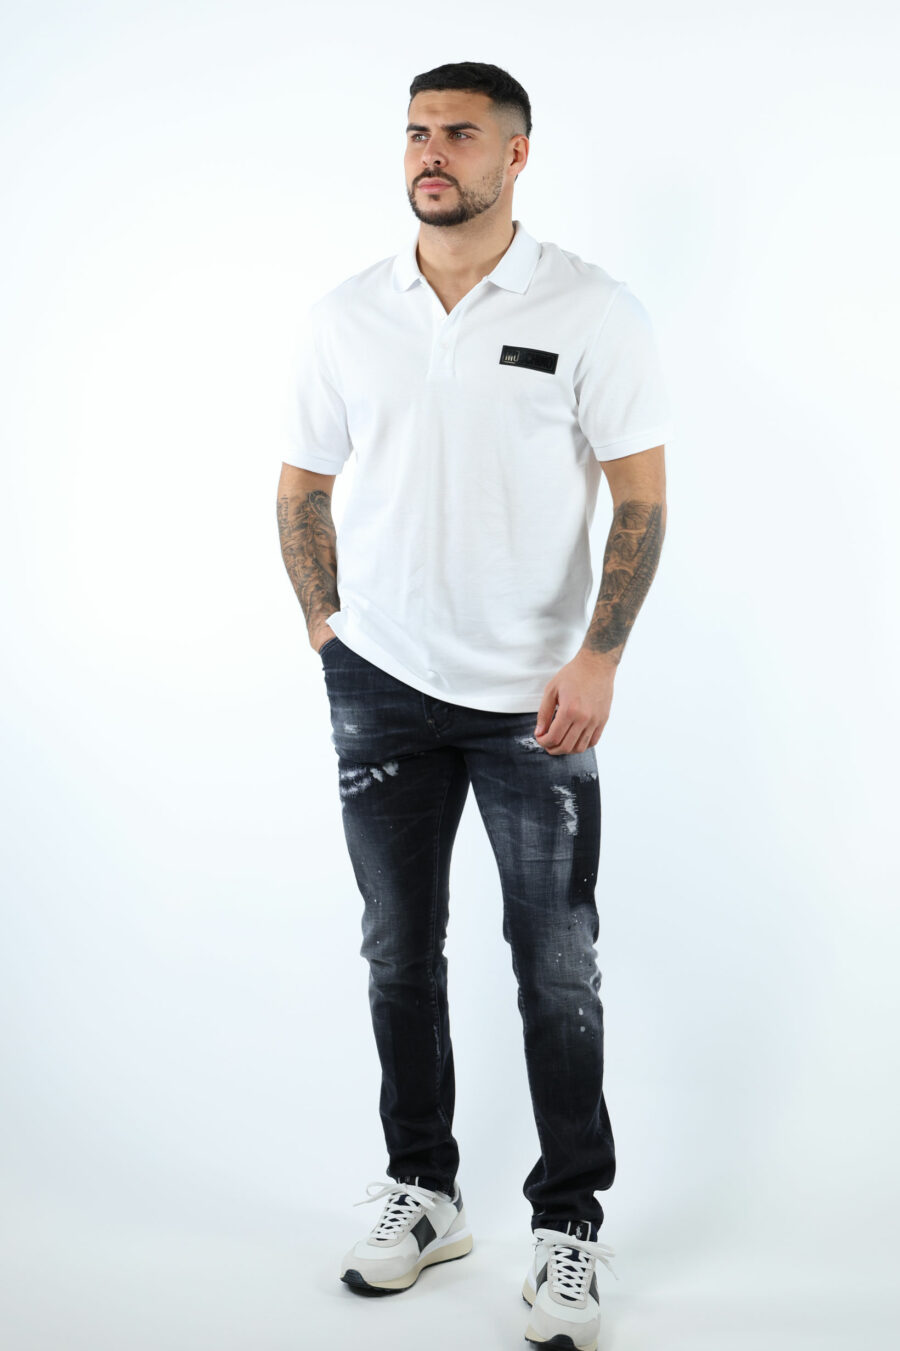 Calças de ganga "cool guy jean" pretas com rasgões e desgastadas - 106753